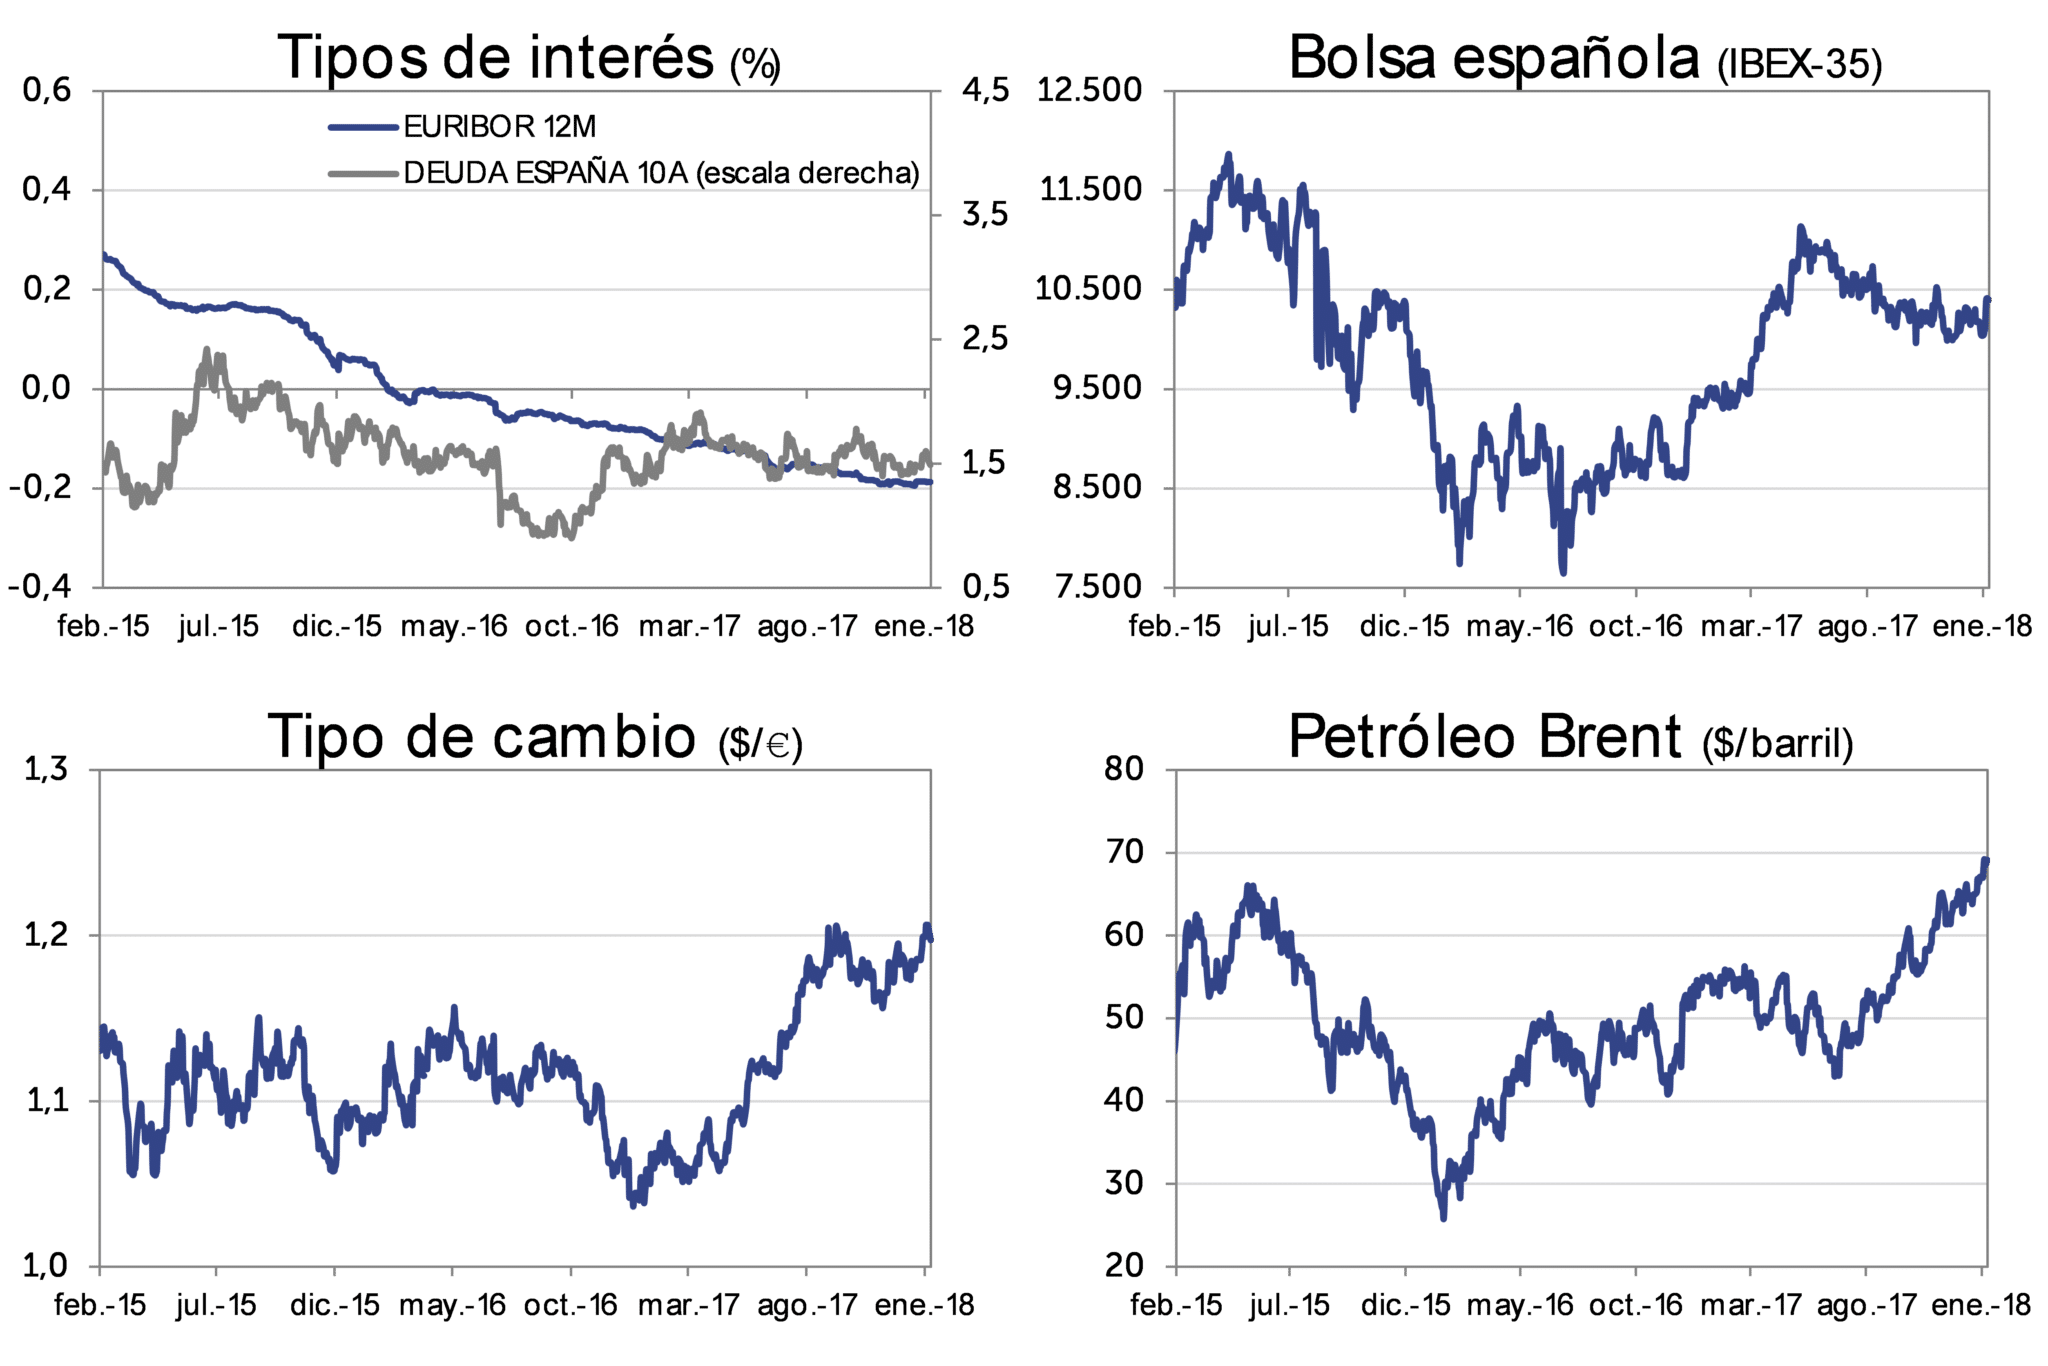 Evolución Mercado ene-2018: Tipos de interés, bolsa española (IBEX-35), Tipo de cambio (dolar/euro), Petróleo Brent (dolar/barril)